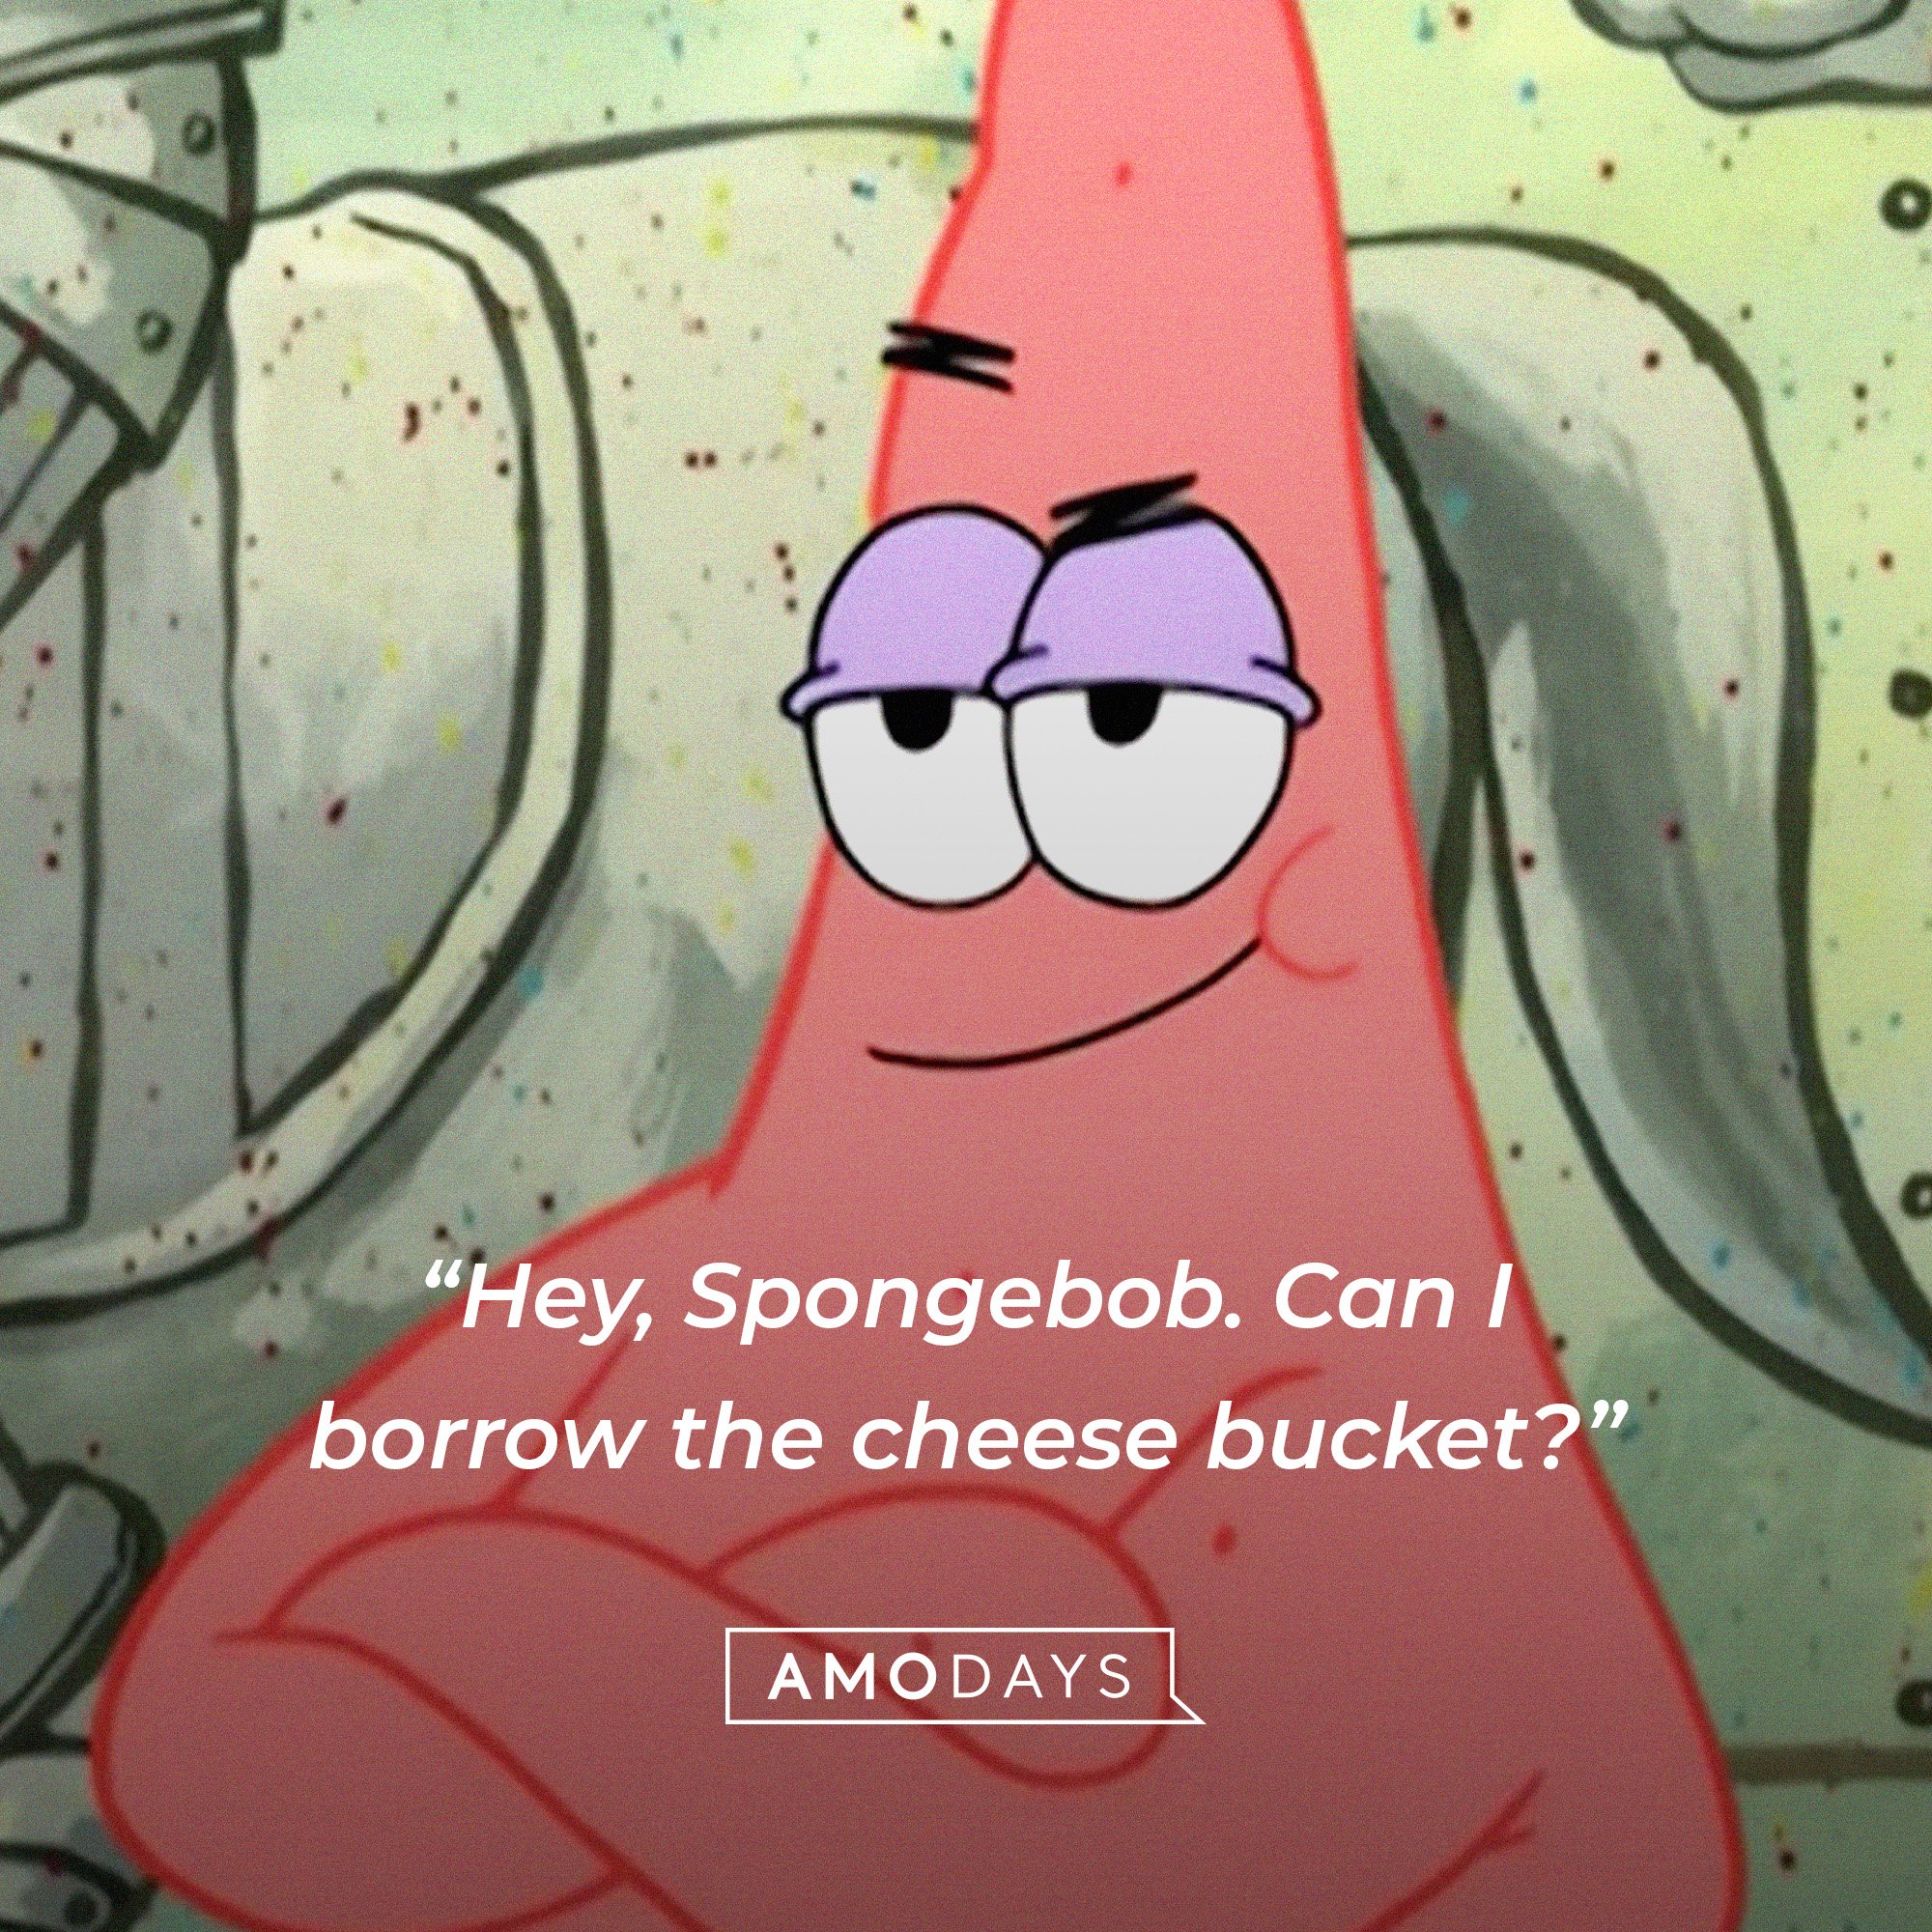 Patrick Star’s quote: “Hey, Spongebob. Can I borrow the cheese bucket?” | Image: AmoDays